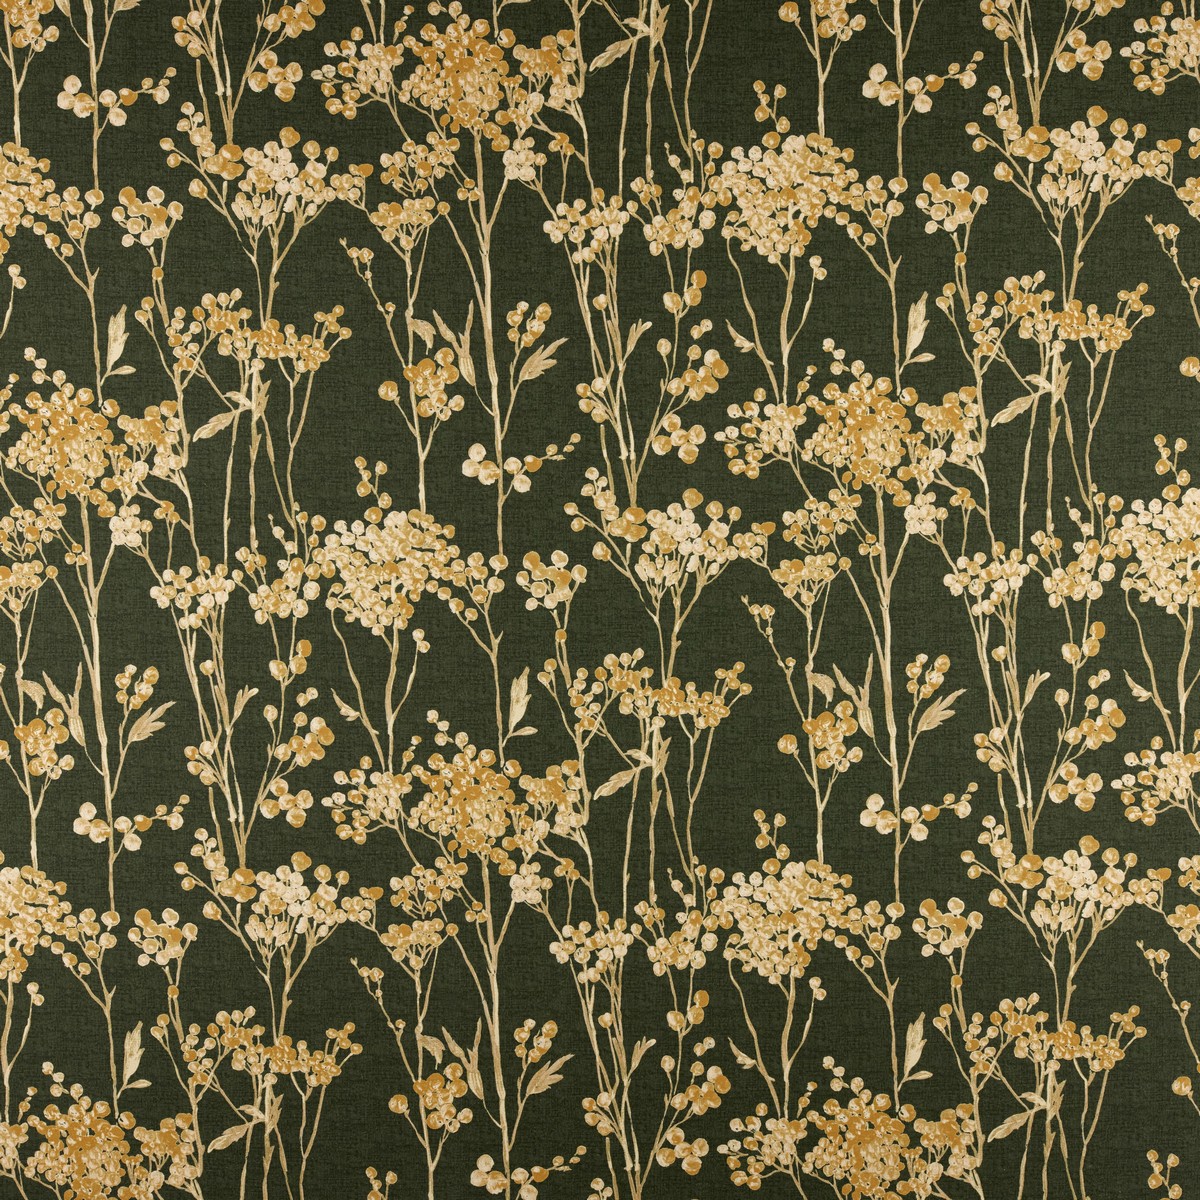 Hawthorn Forest Fabric by Ashley Wilde